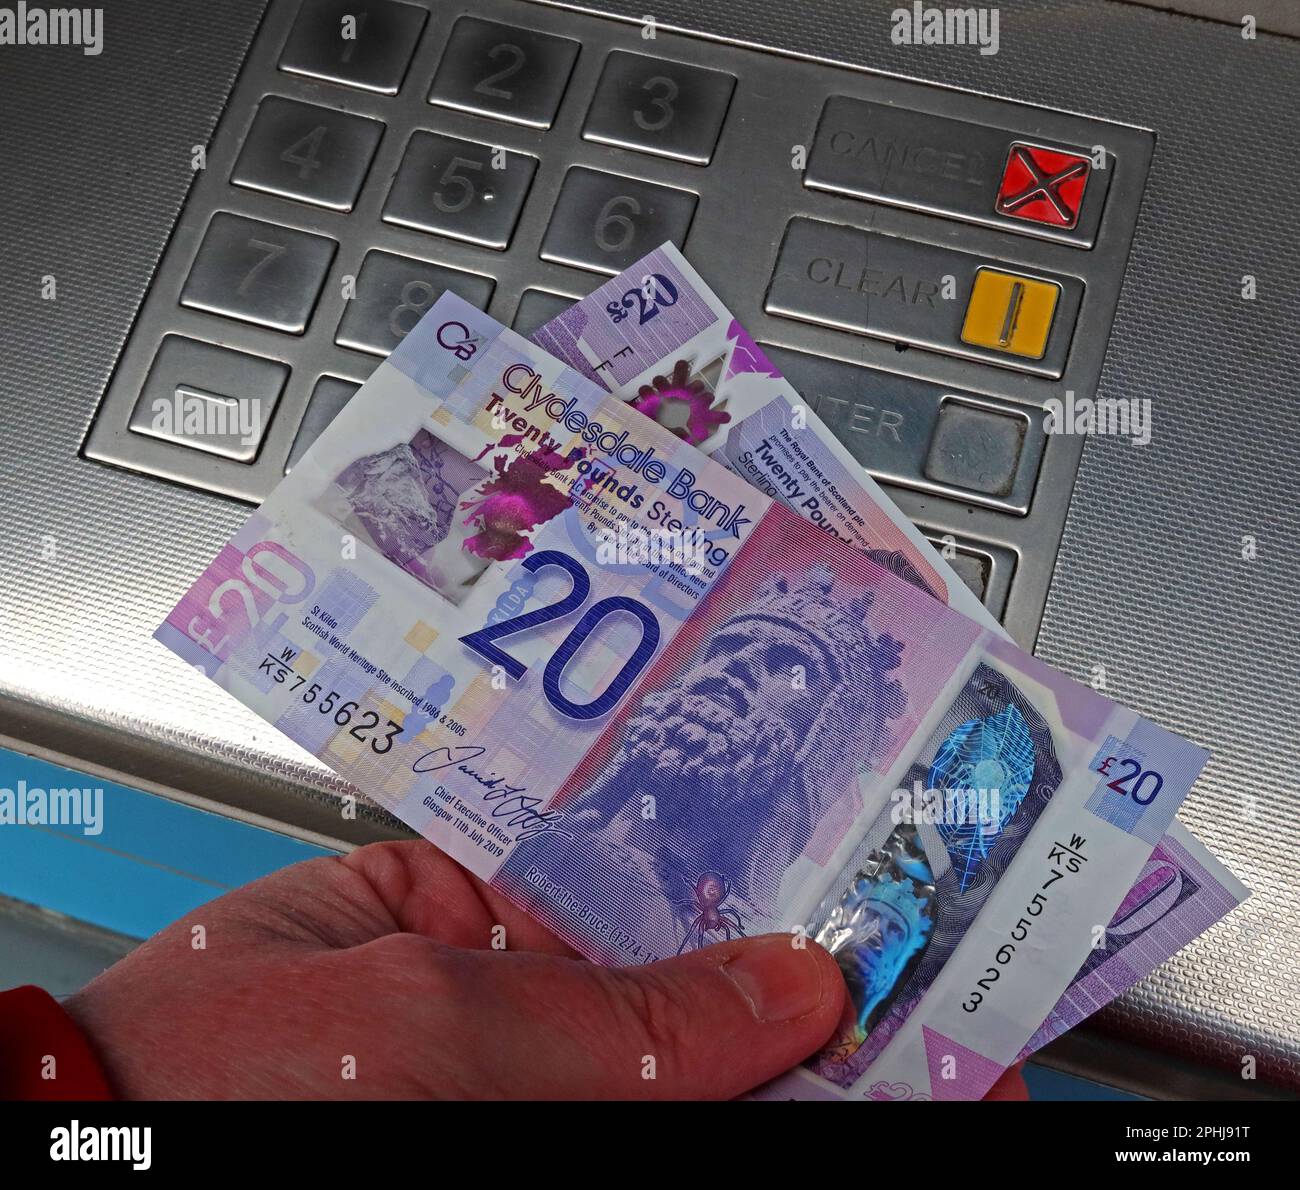 Cash point - billets de banque écossais, délivrés à partir d'un guichet automatique local, distributeur automatique de billets de banque, Glasgow, Écosse, Royaume-Uni, G3 8AD Banque D'Images